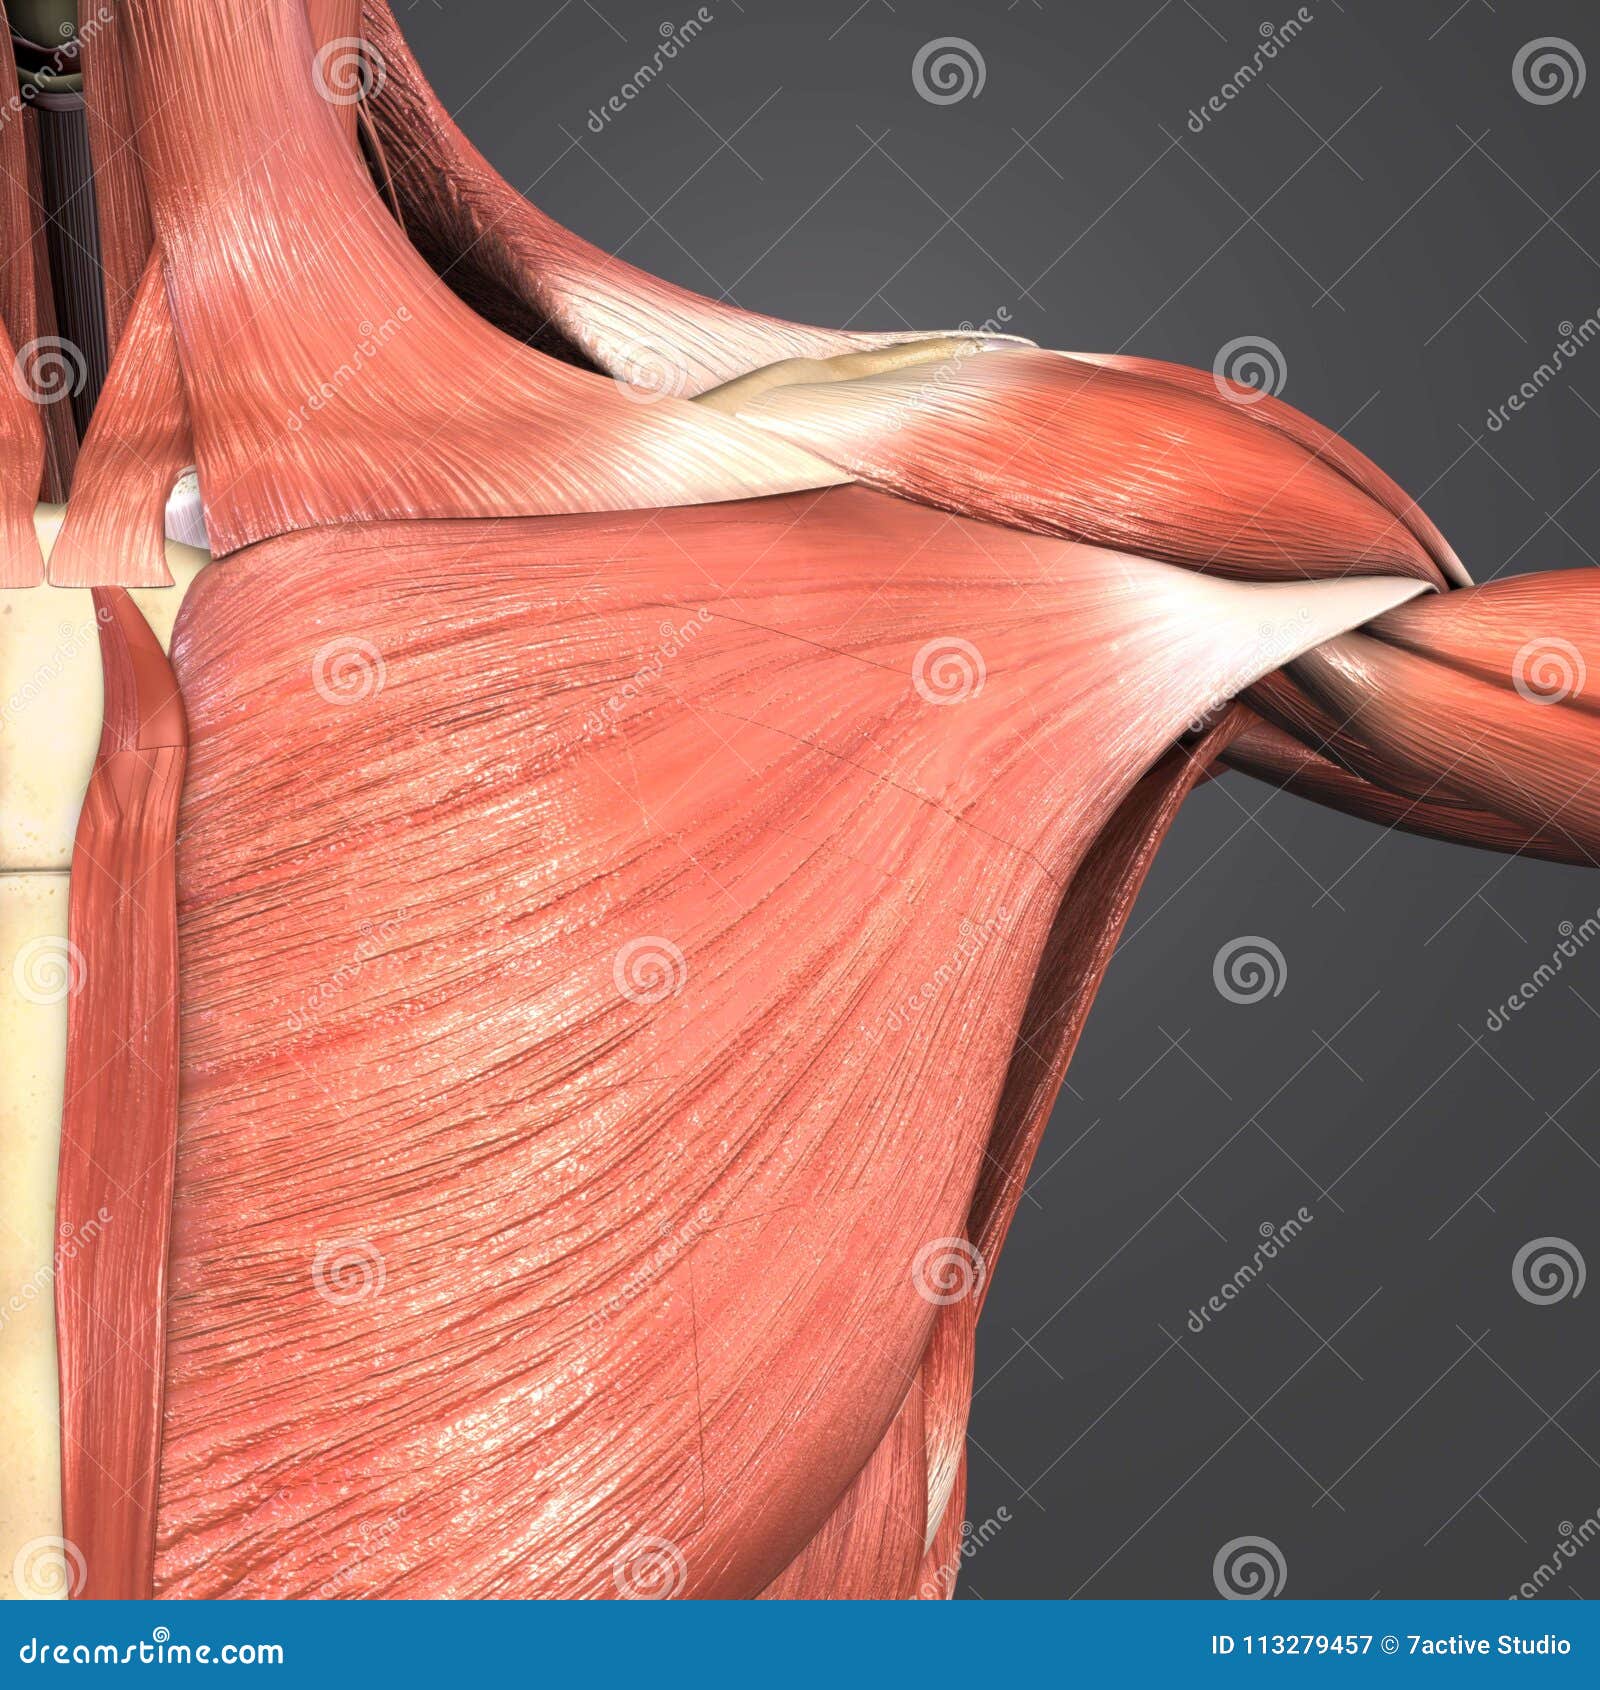 pectoralis major muscle